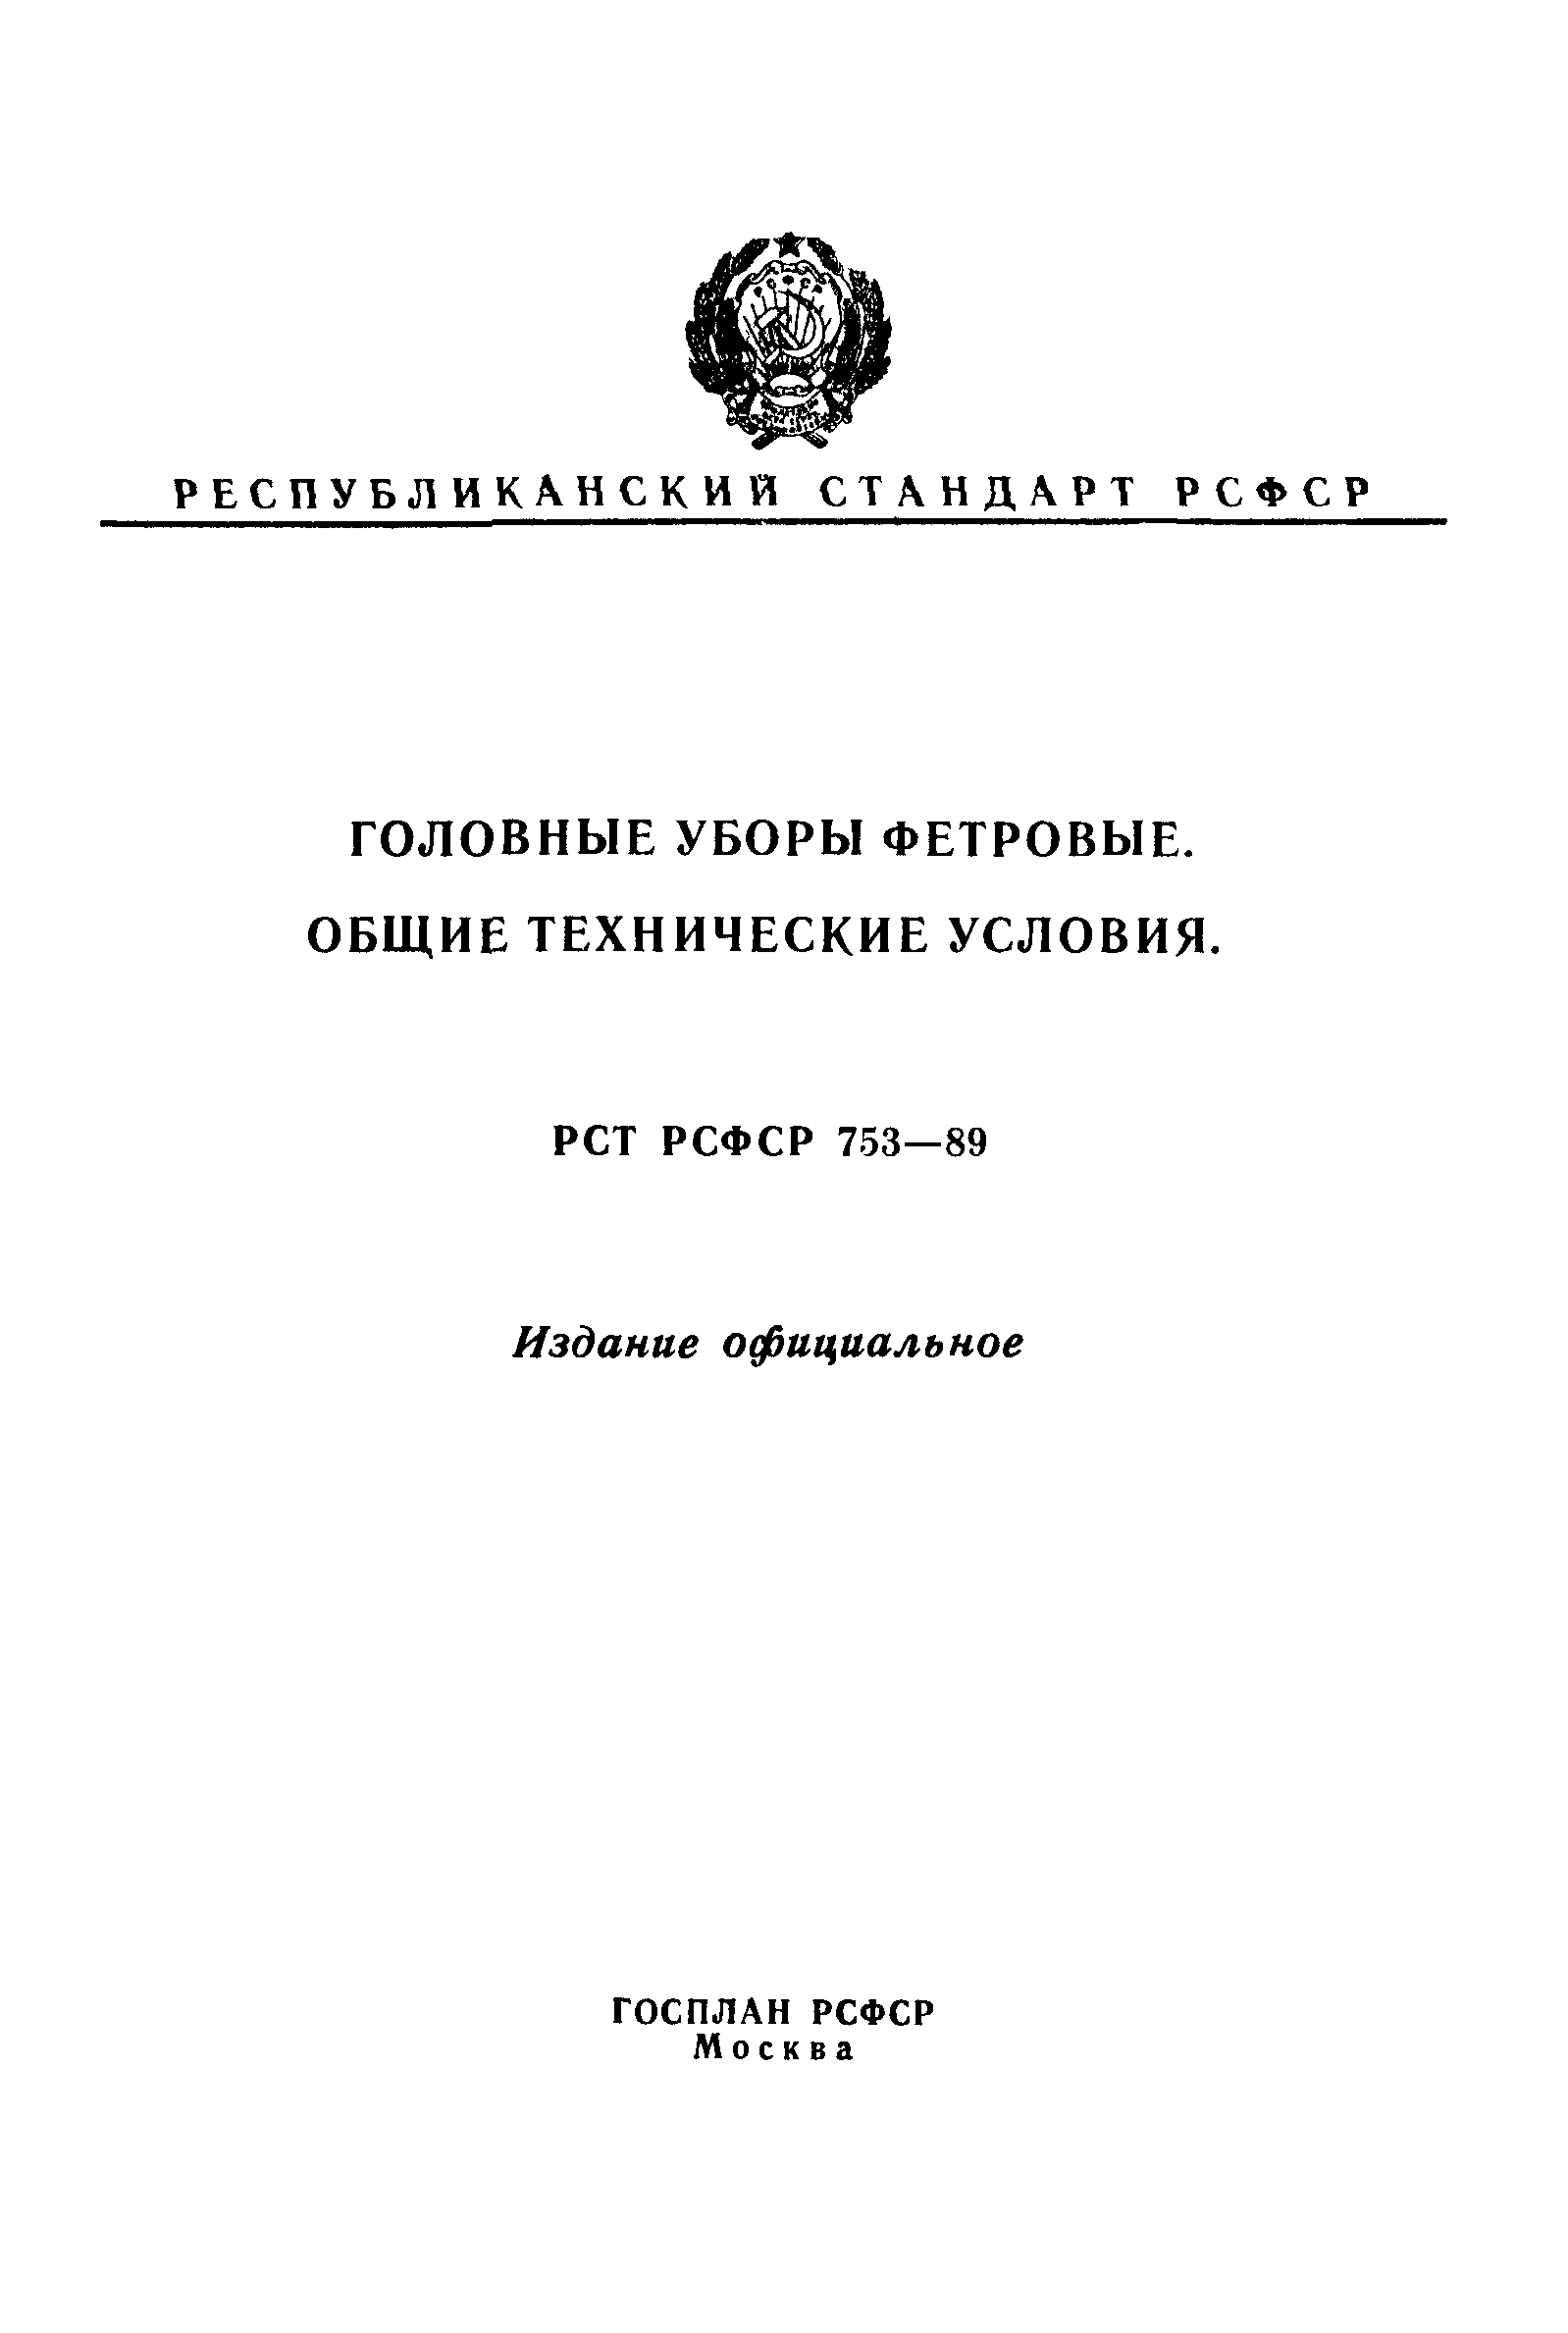 РСТ РСФСР 753-89